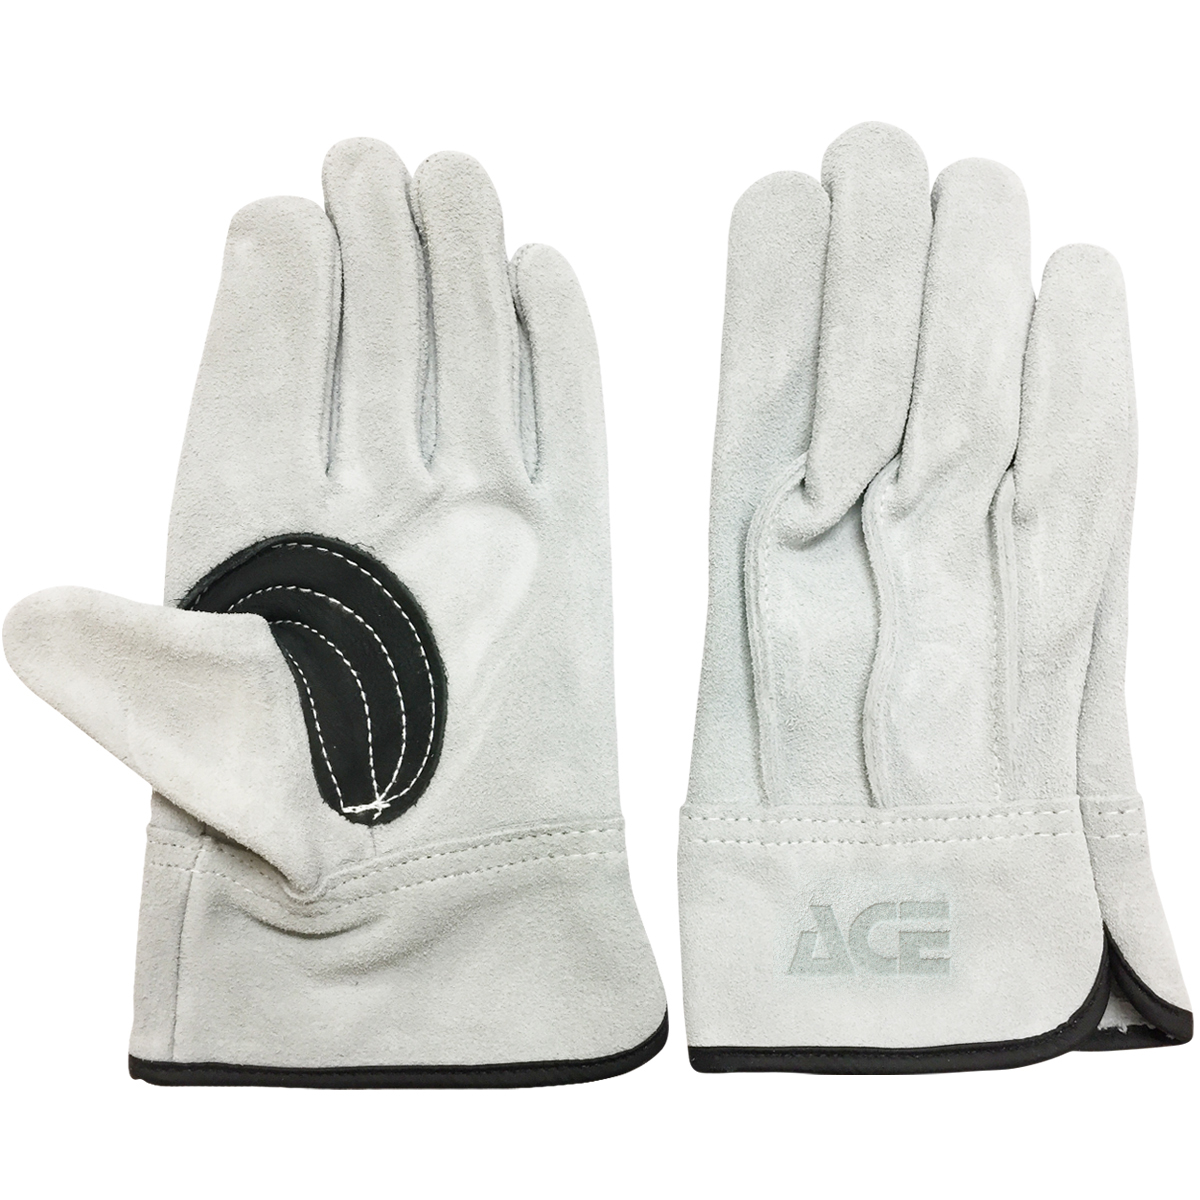 牛床革 カワテ 外縫い AG4601 | ACE 作業用革手袋・作業用手袋のエース